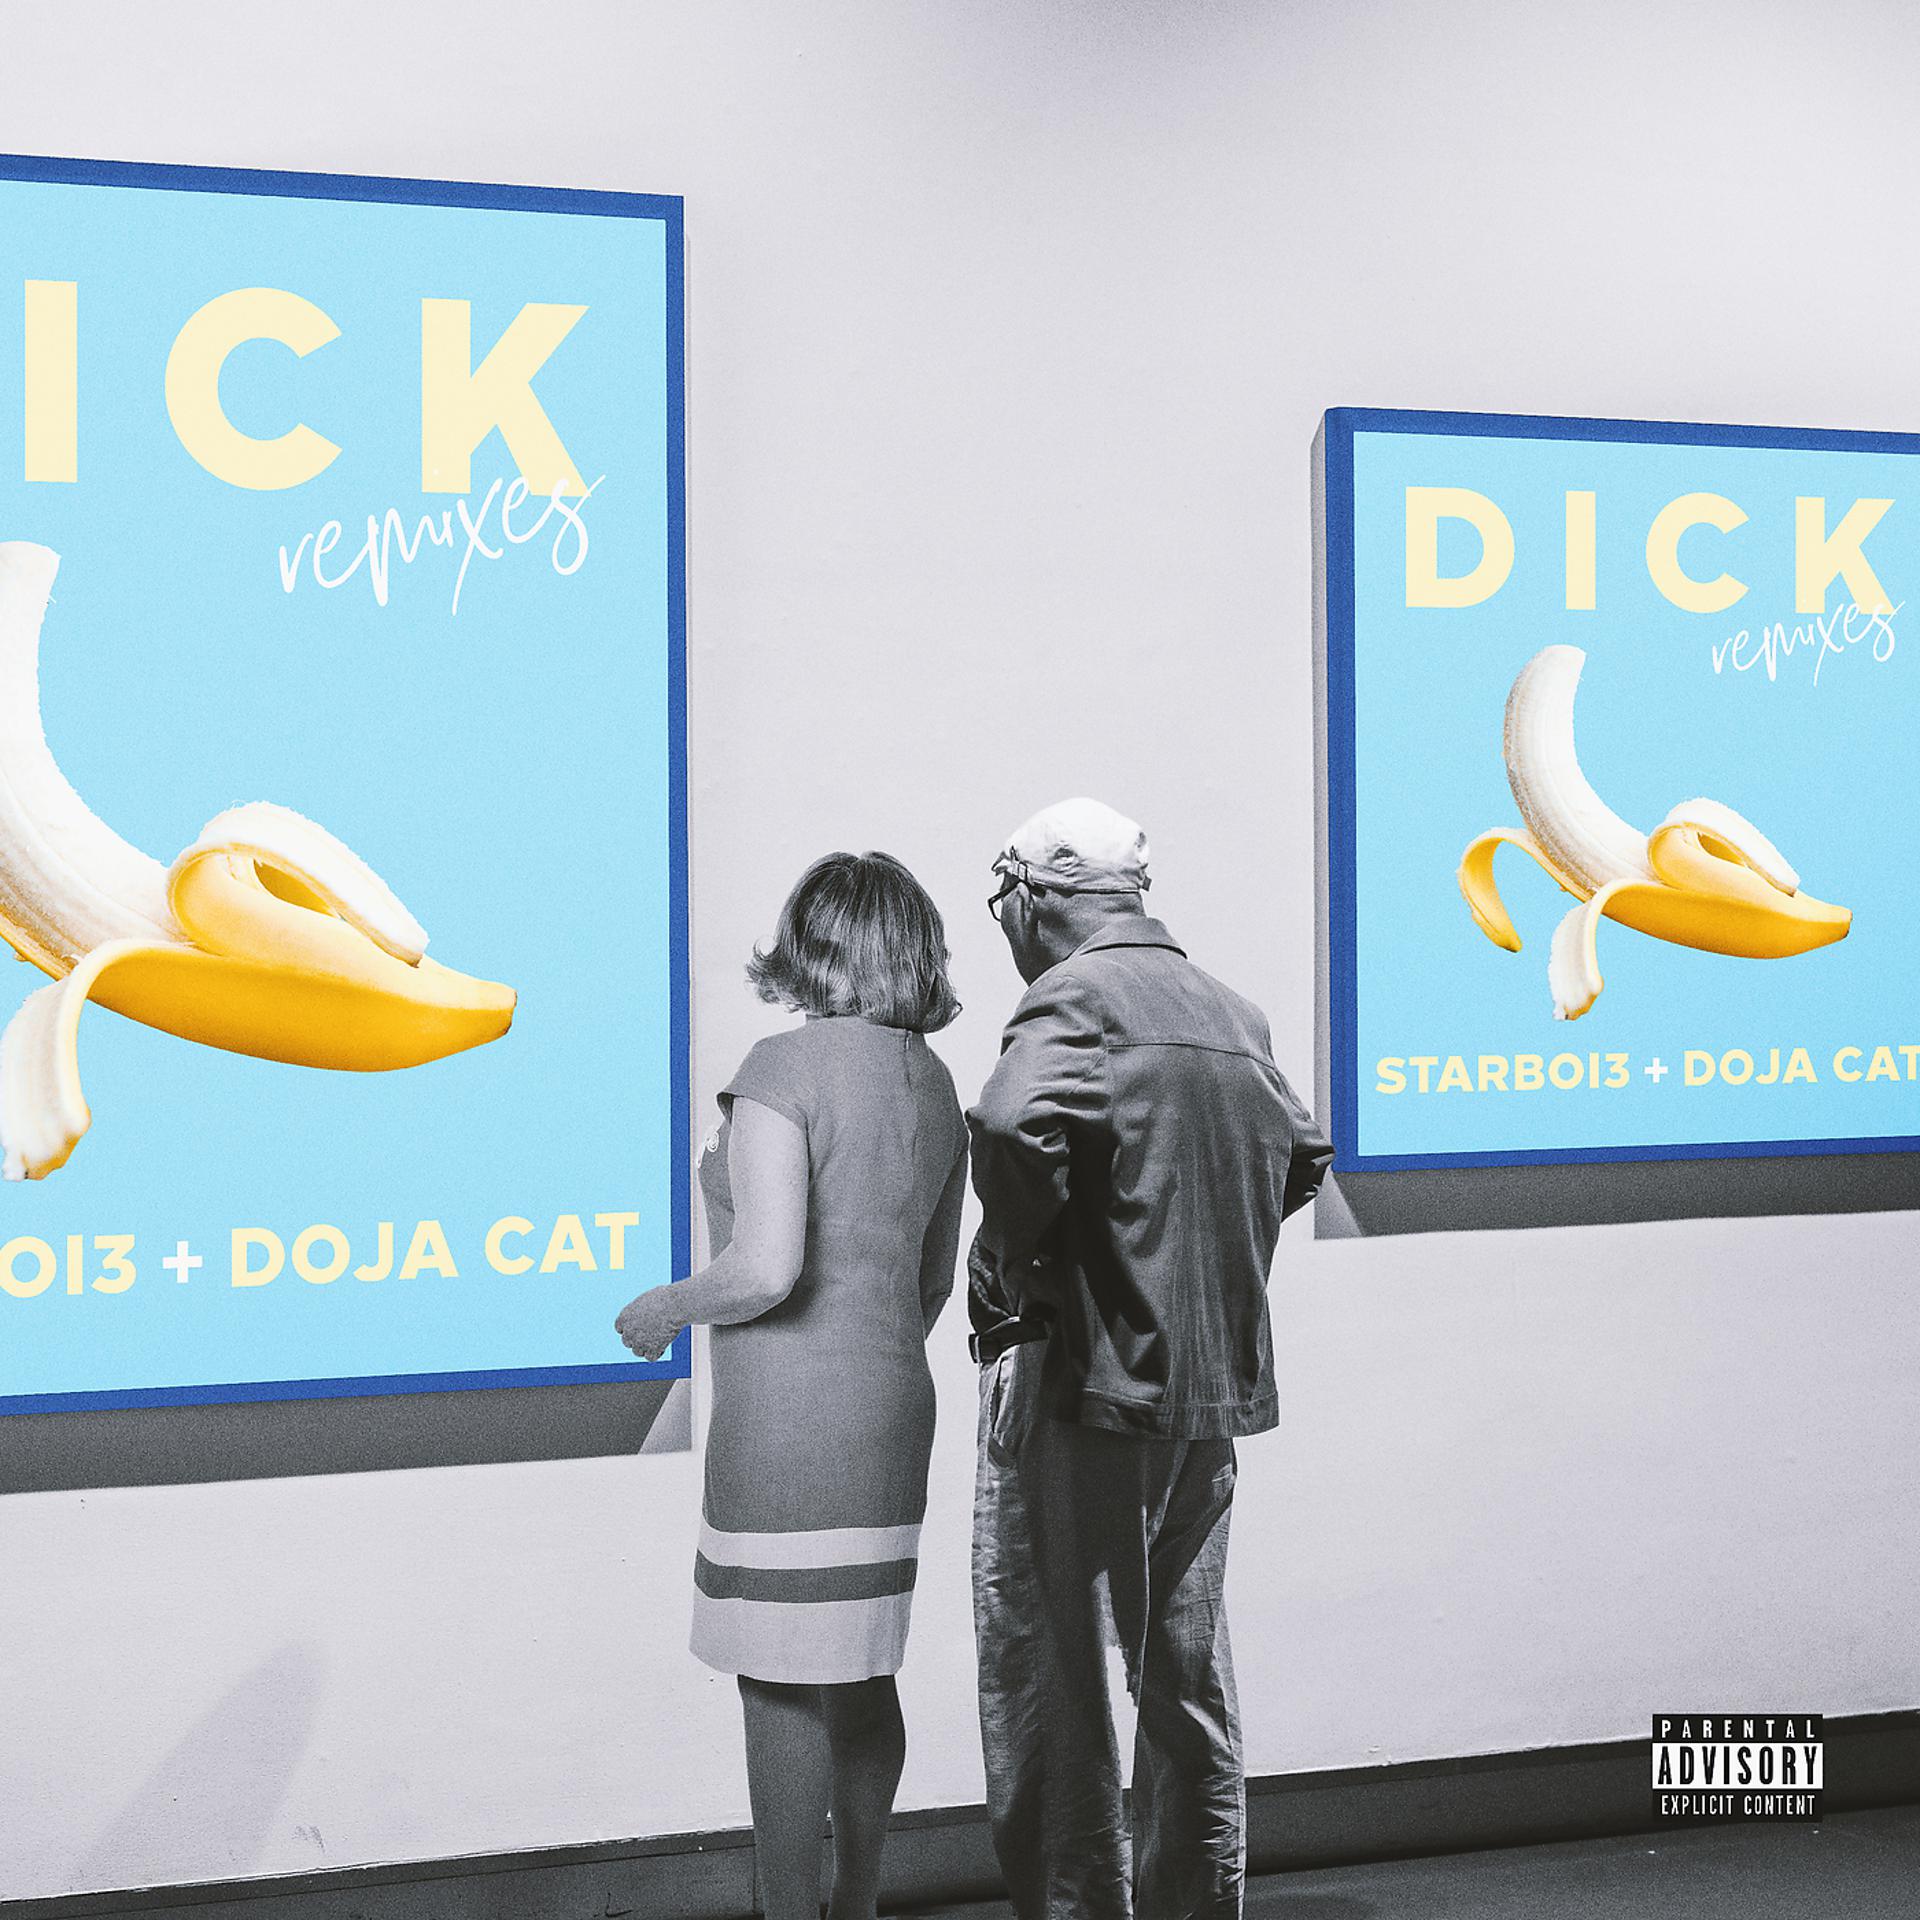 Dick Doja Cat. Dick starboi3, Doja Cat. Starboi3 feat. Doja Cat. Dick feat Doja Cat. Dick song